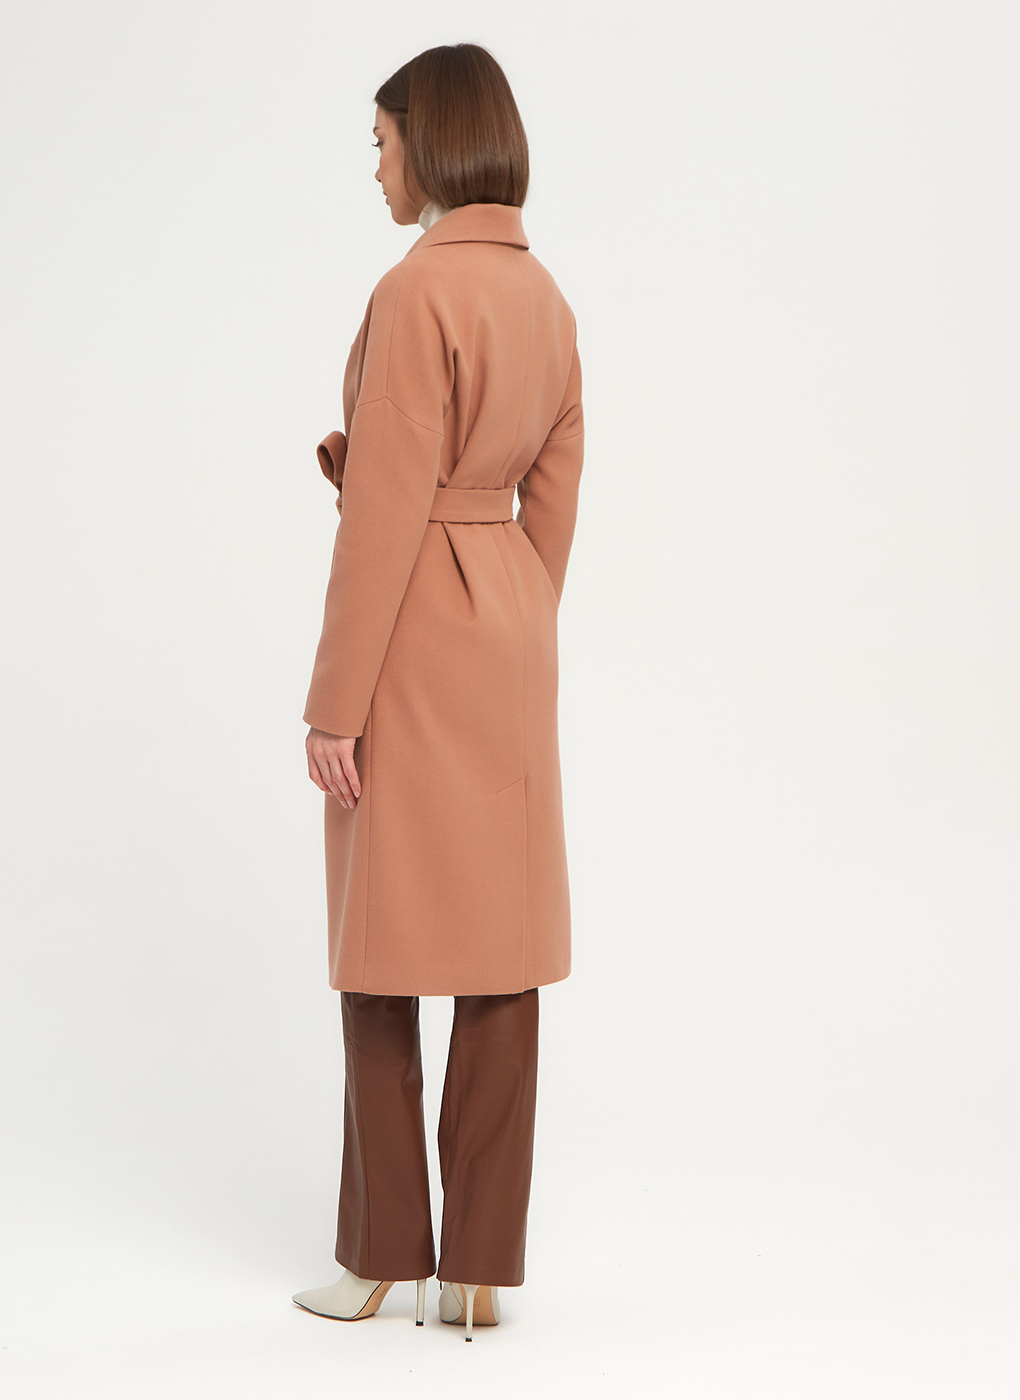 Пальто женское Giulia Rosetti 56204 розовое 44 RU